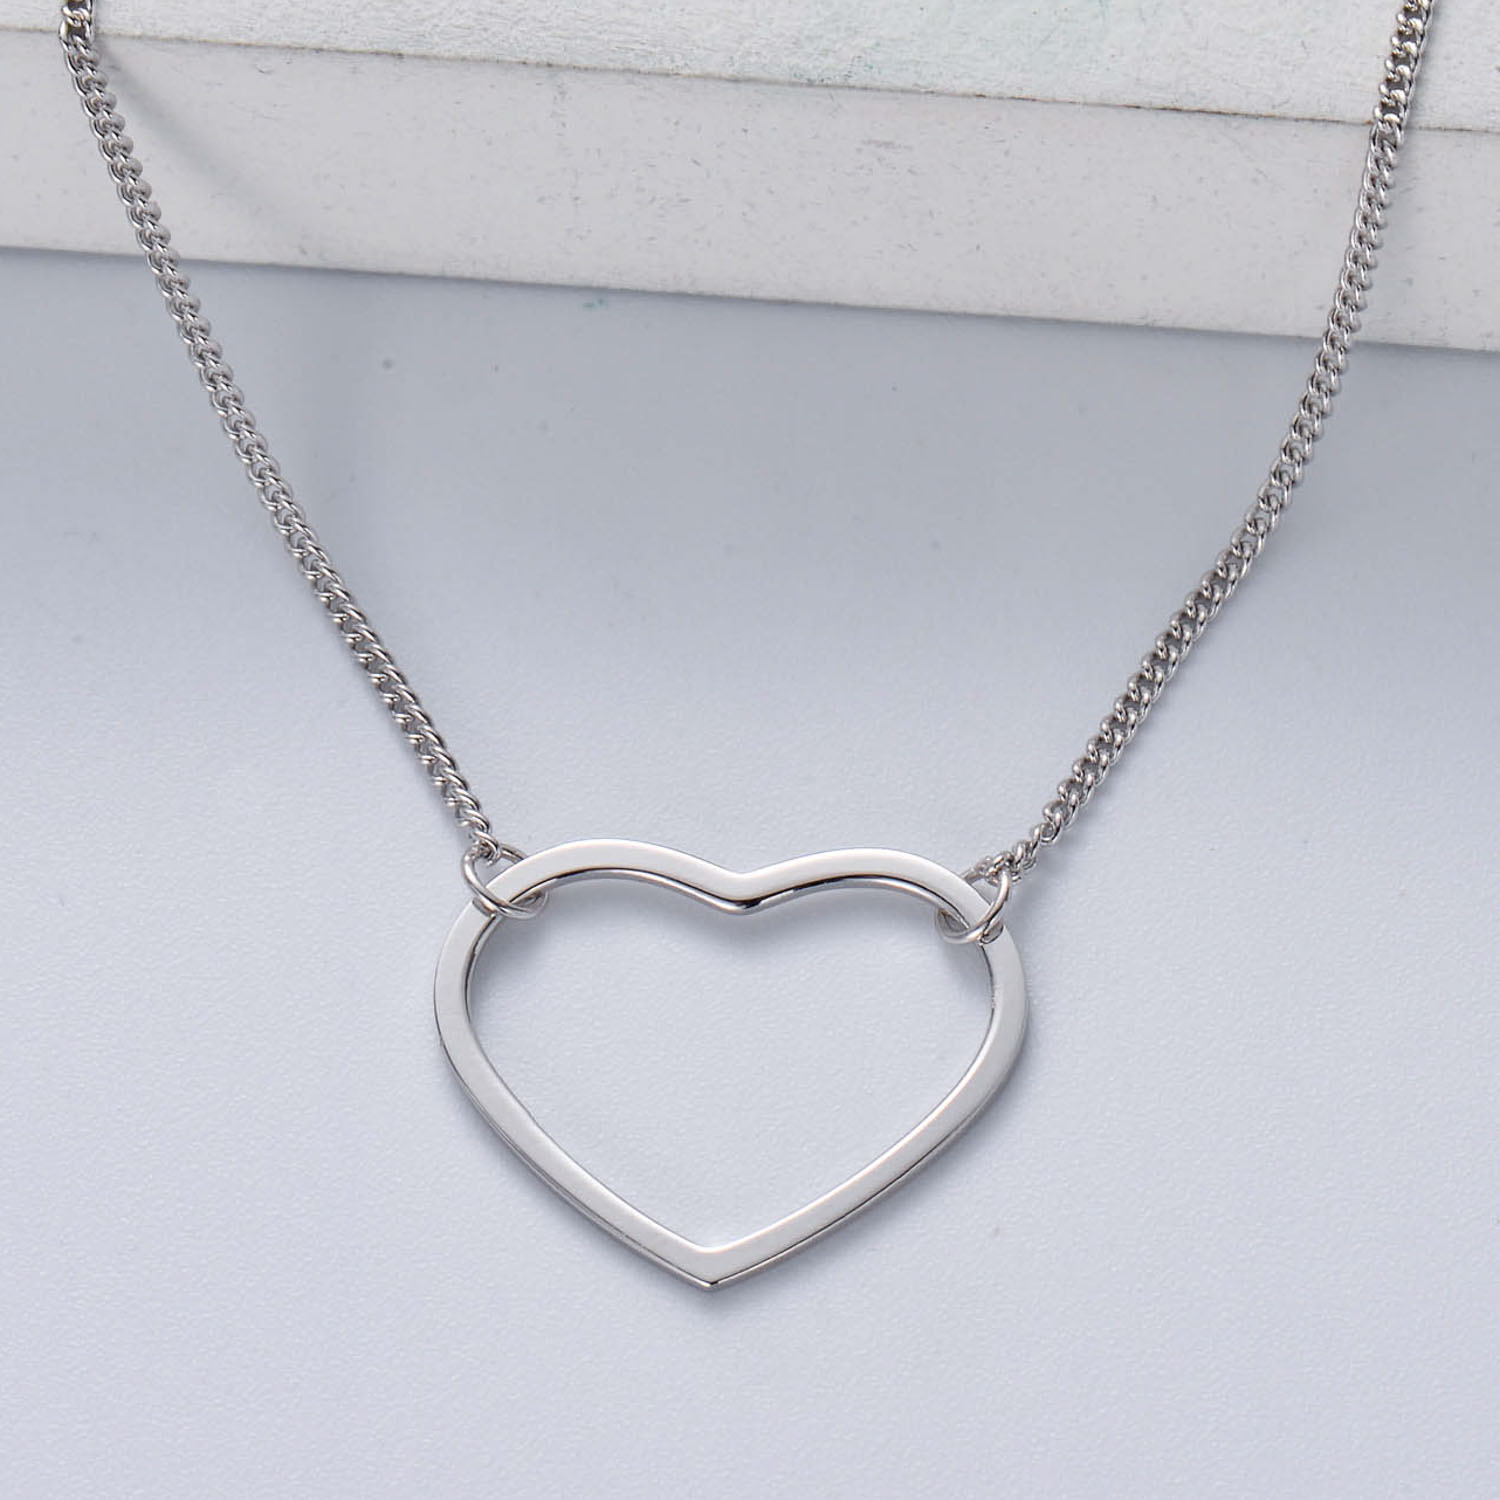 collar de corazon plata 925 para senorita diseno en moda color silver